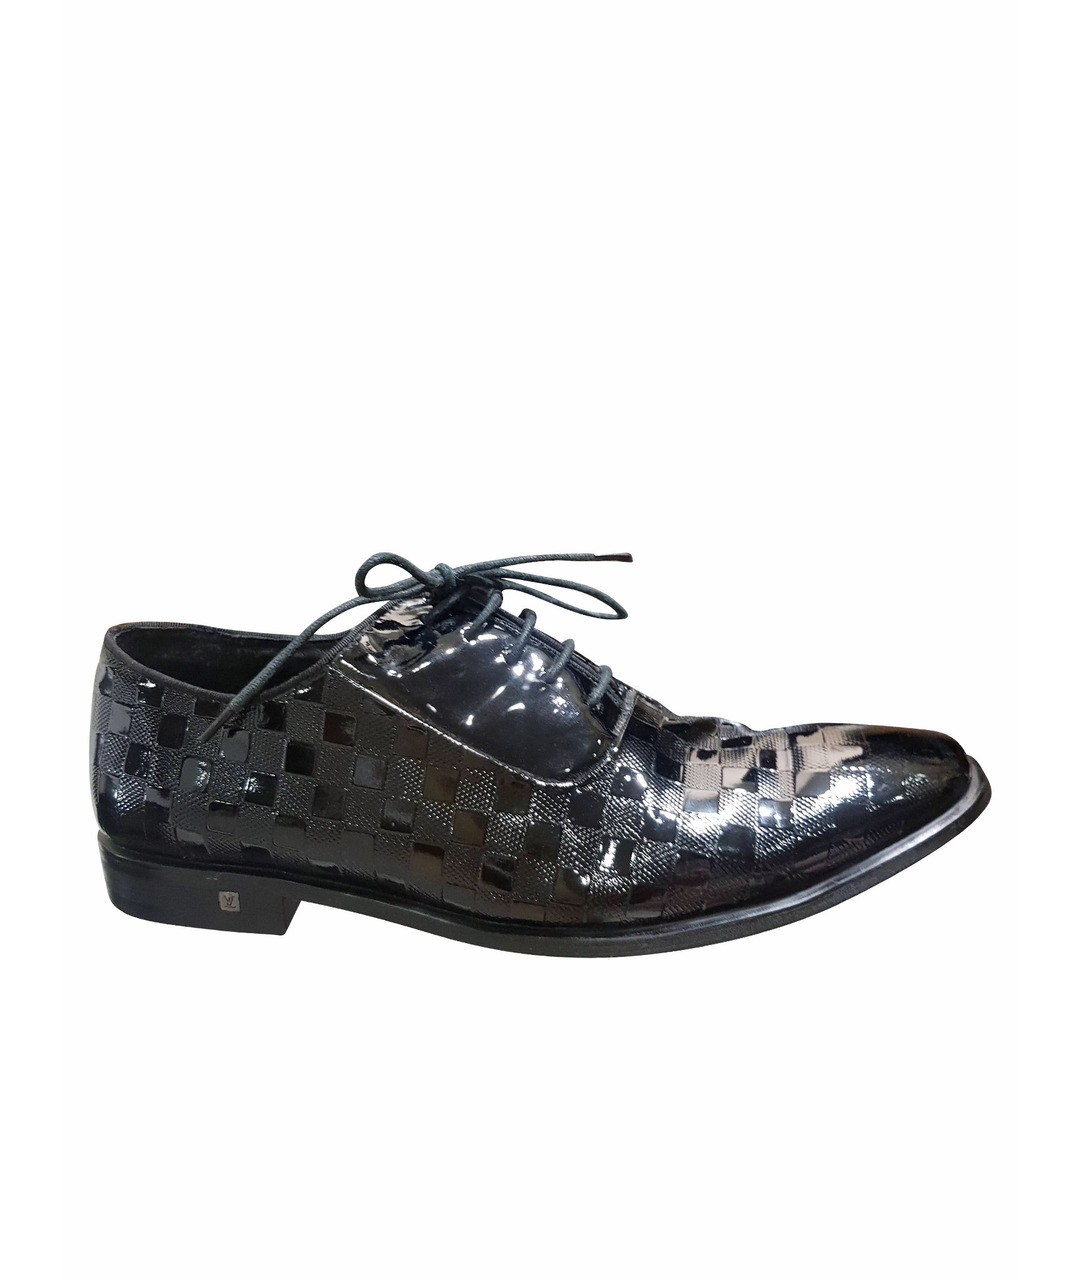 LOUIS VUITTON PRE-OWNED Черные туфли из лакированной кожи, фото 1